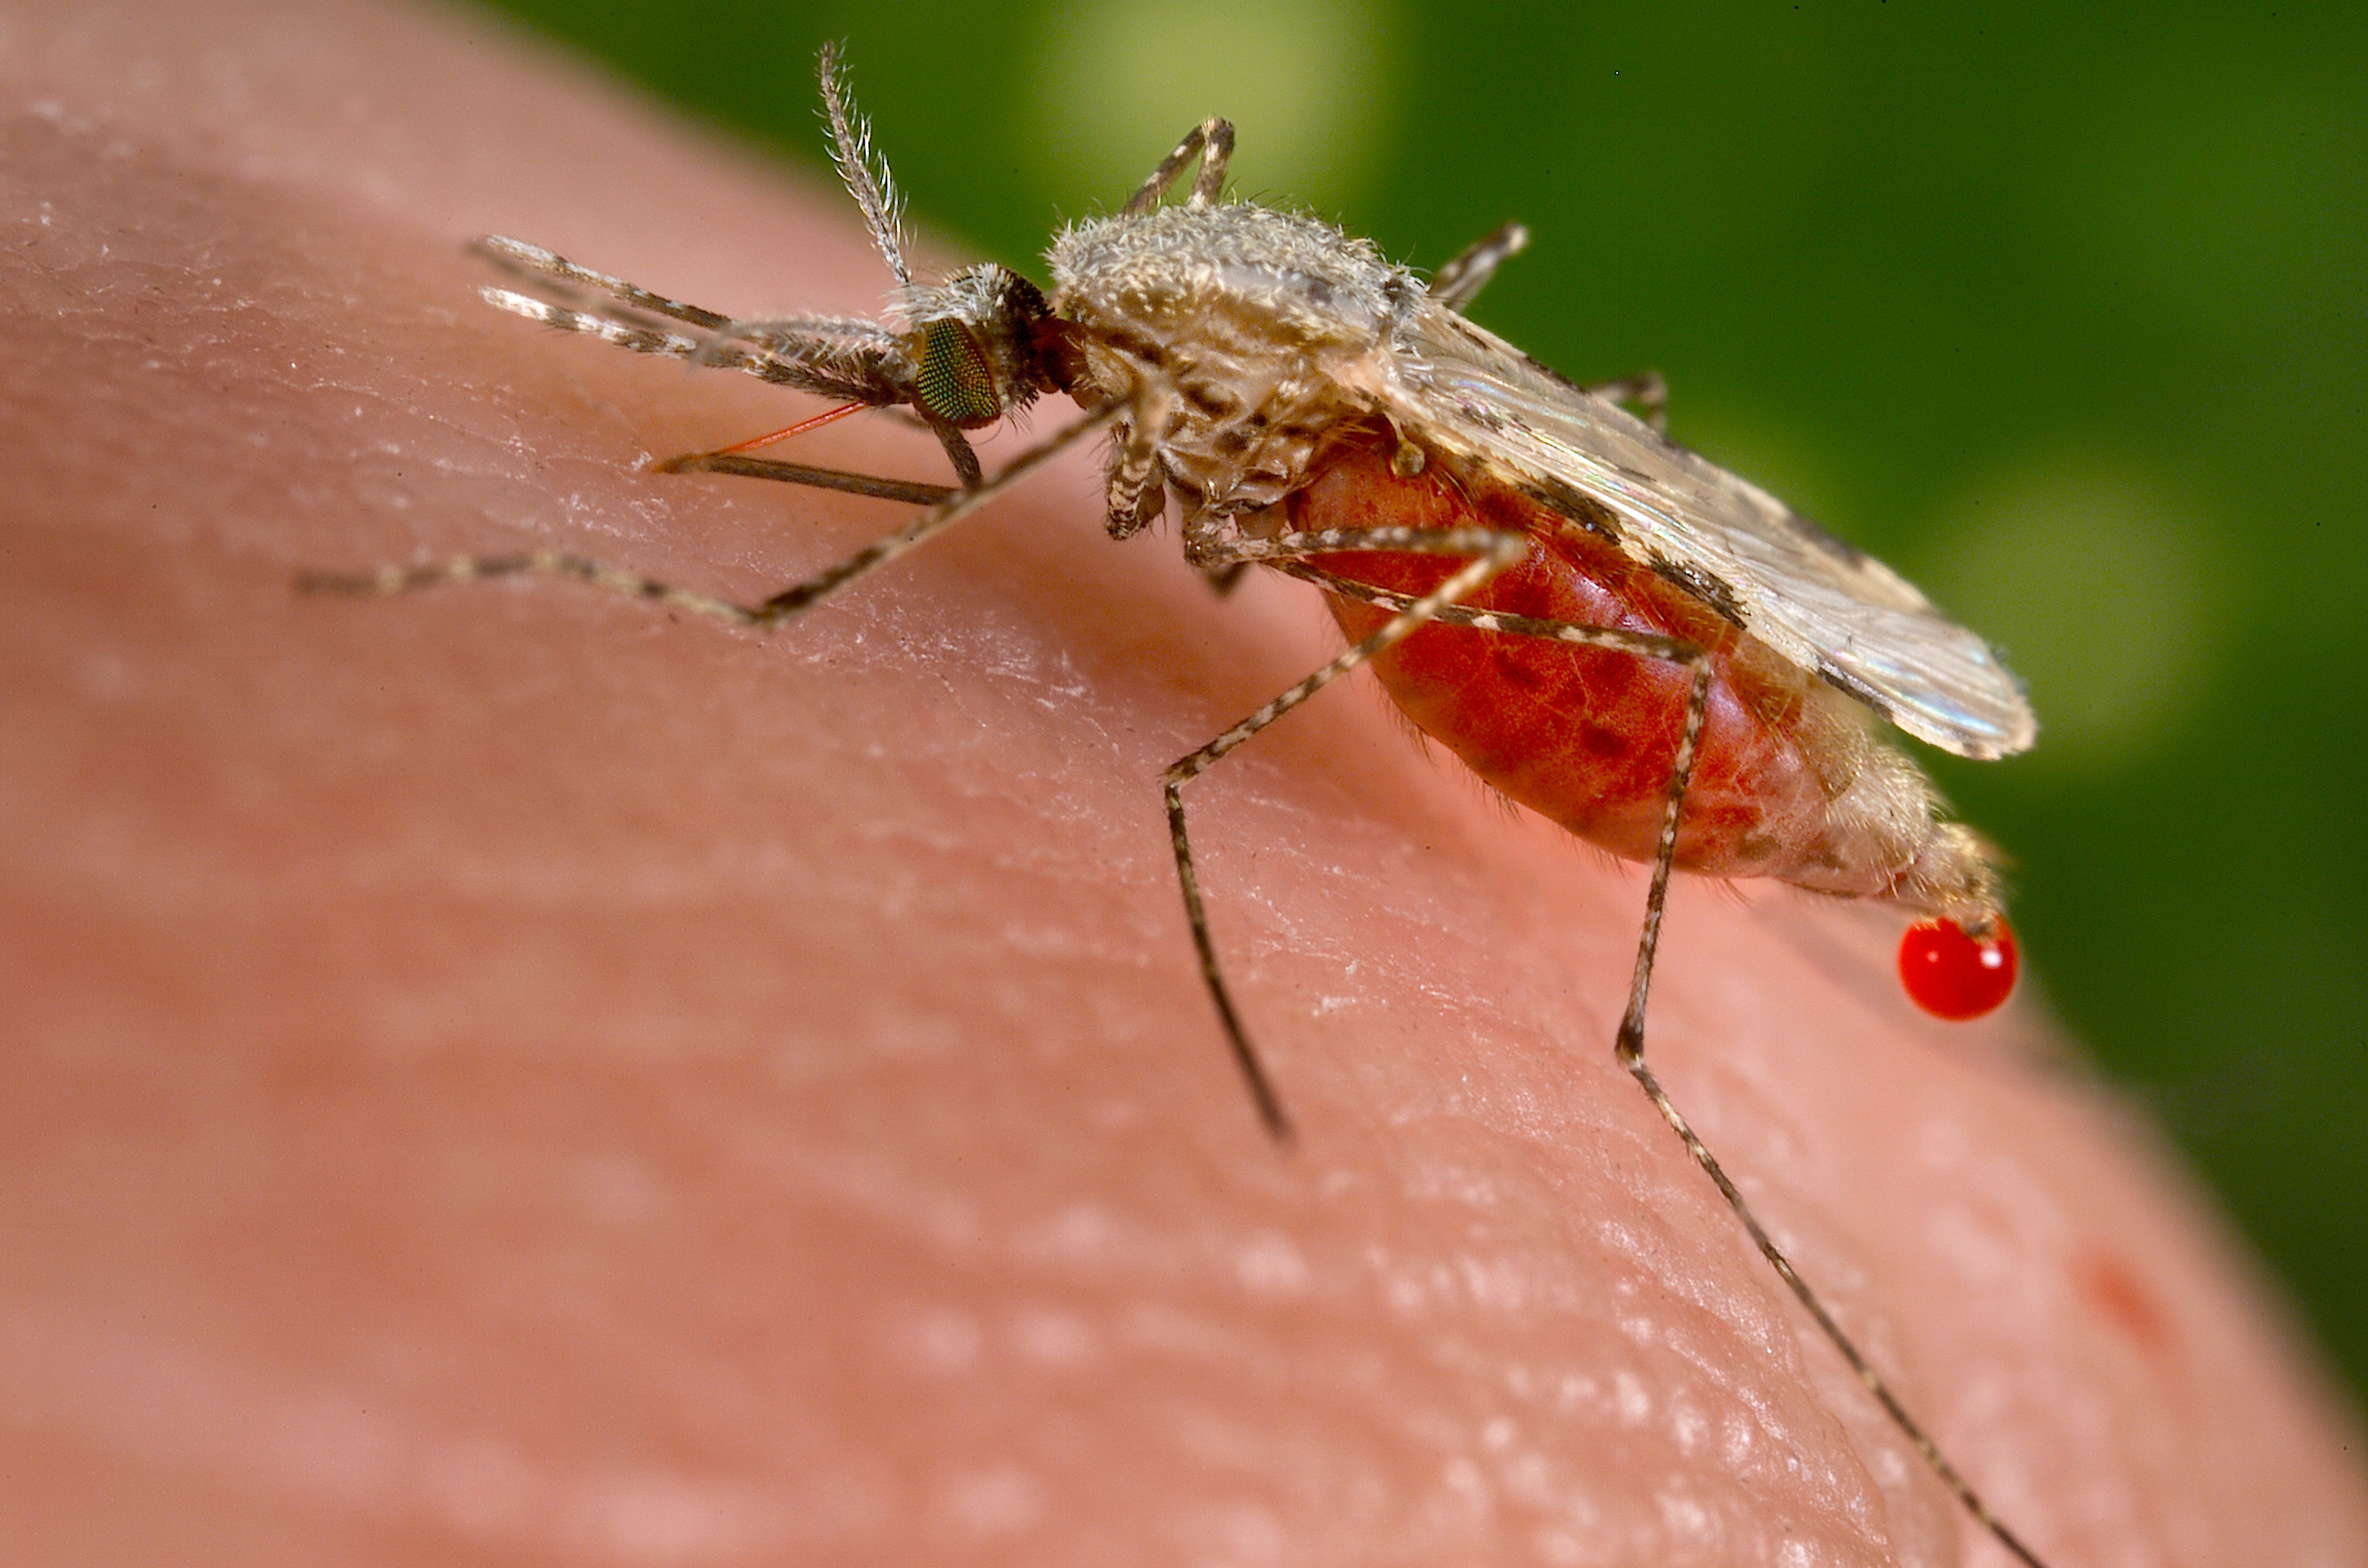 malaria causing mosquito